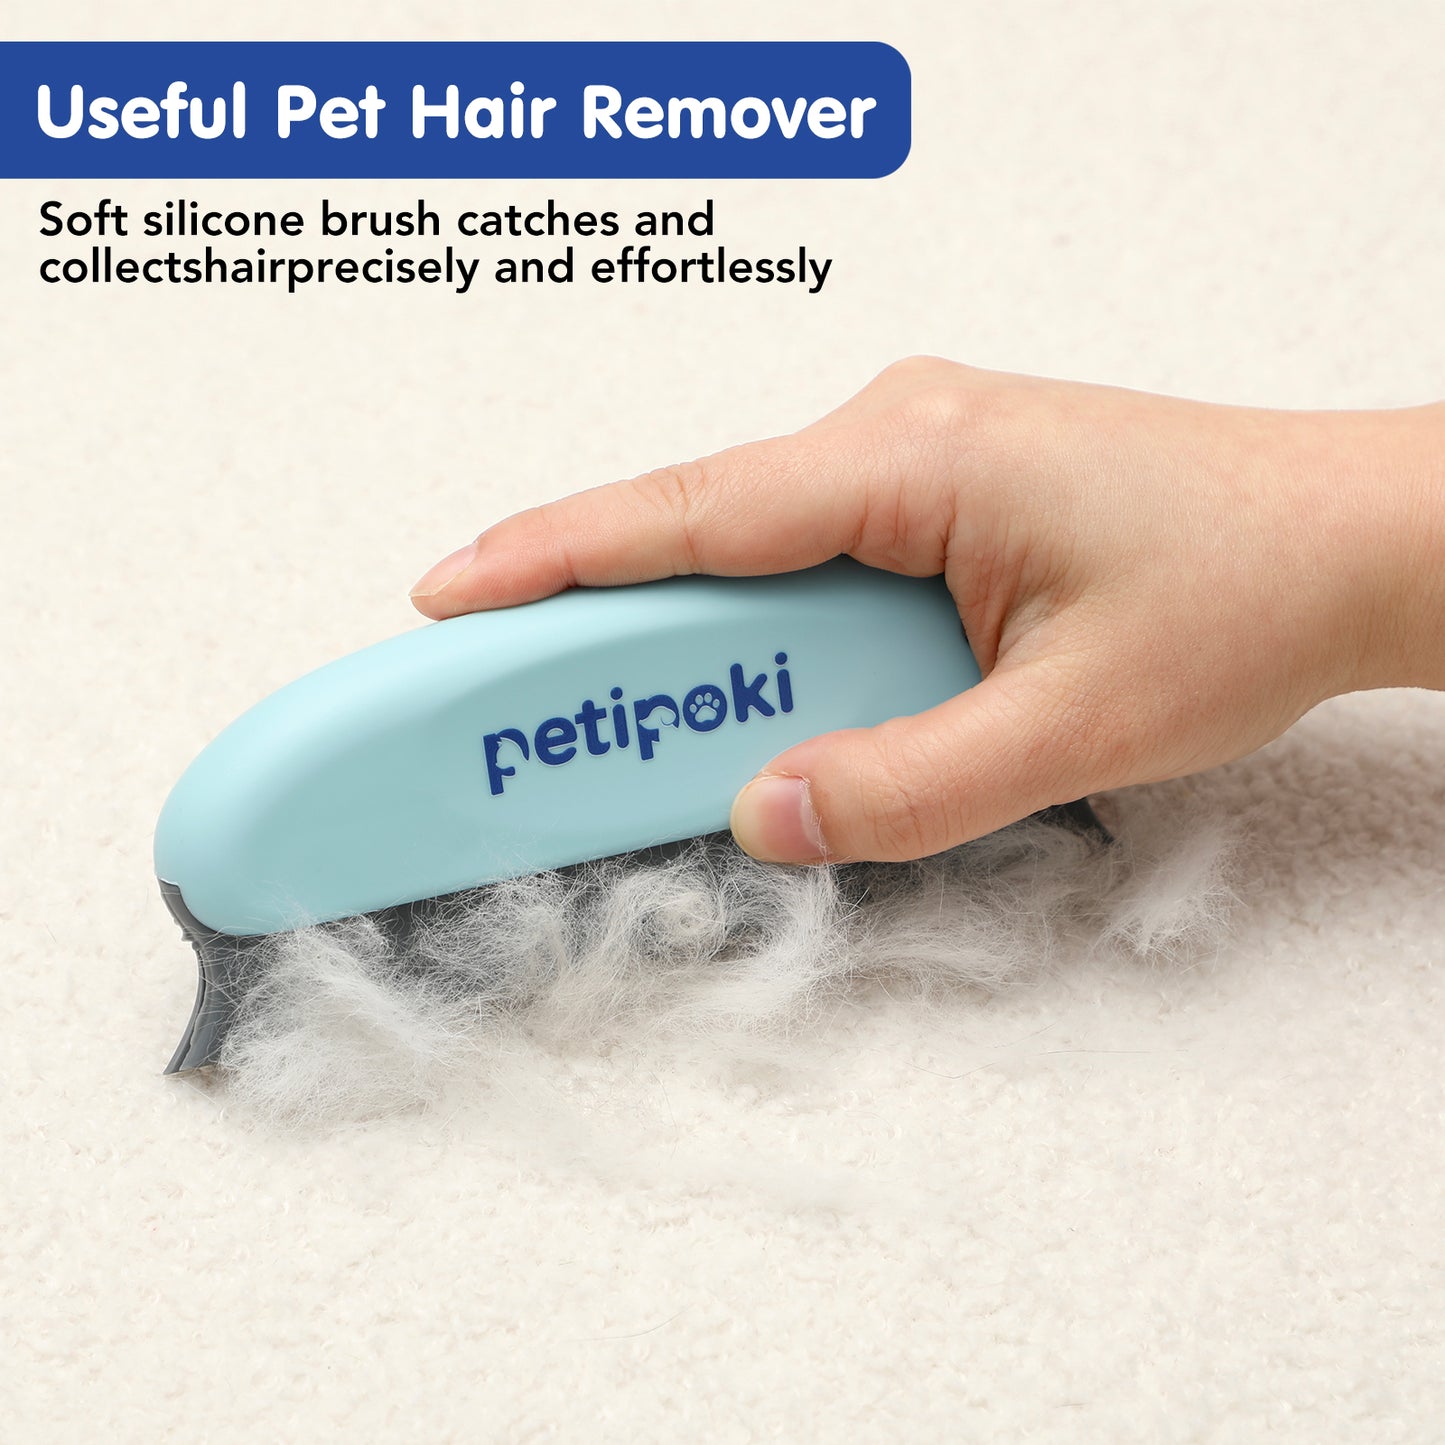 [Buy 3 Get 4] Super Pet Hair Remover Tools Set